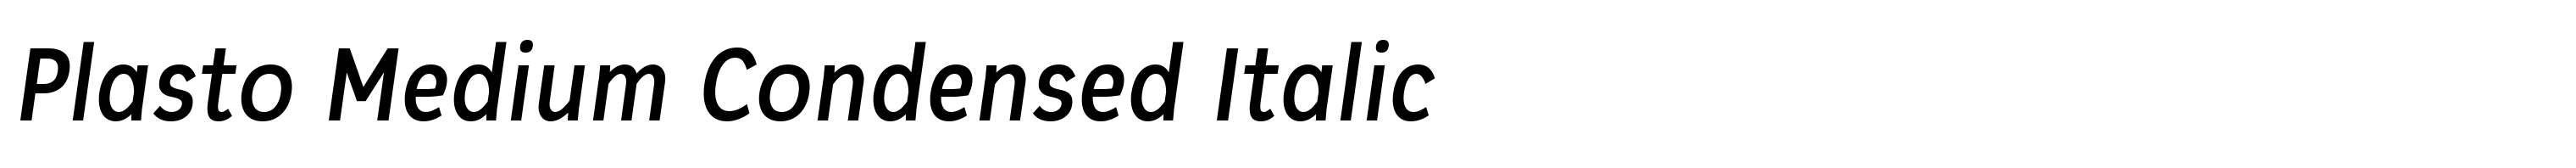 Plasto Medium Condensed Italic